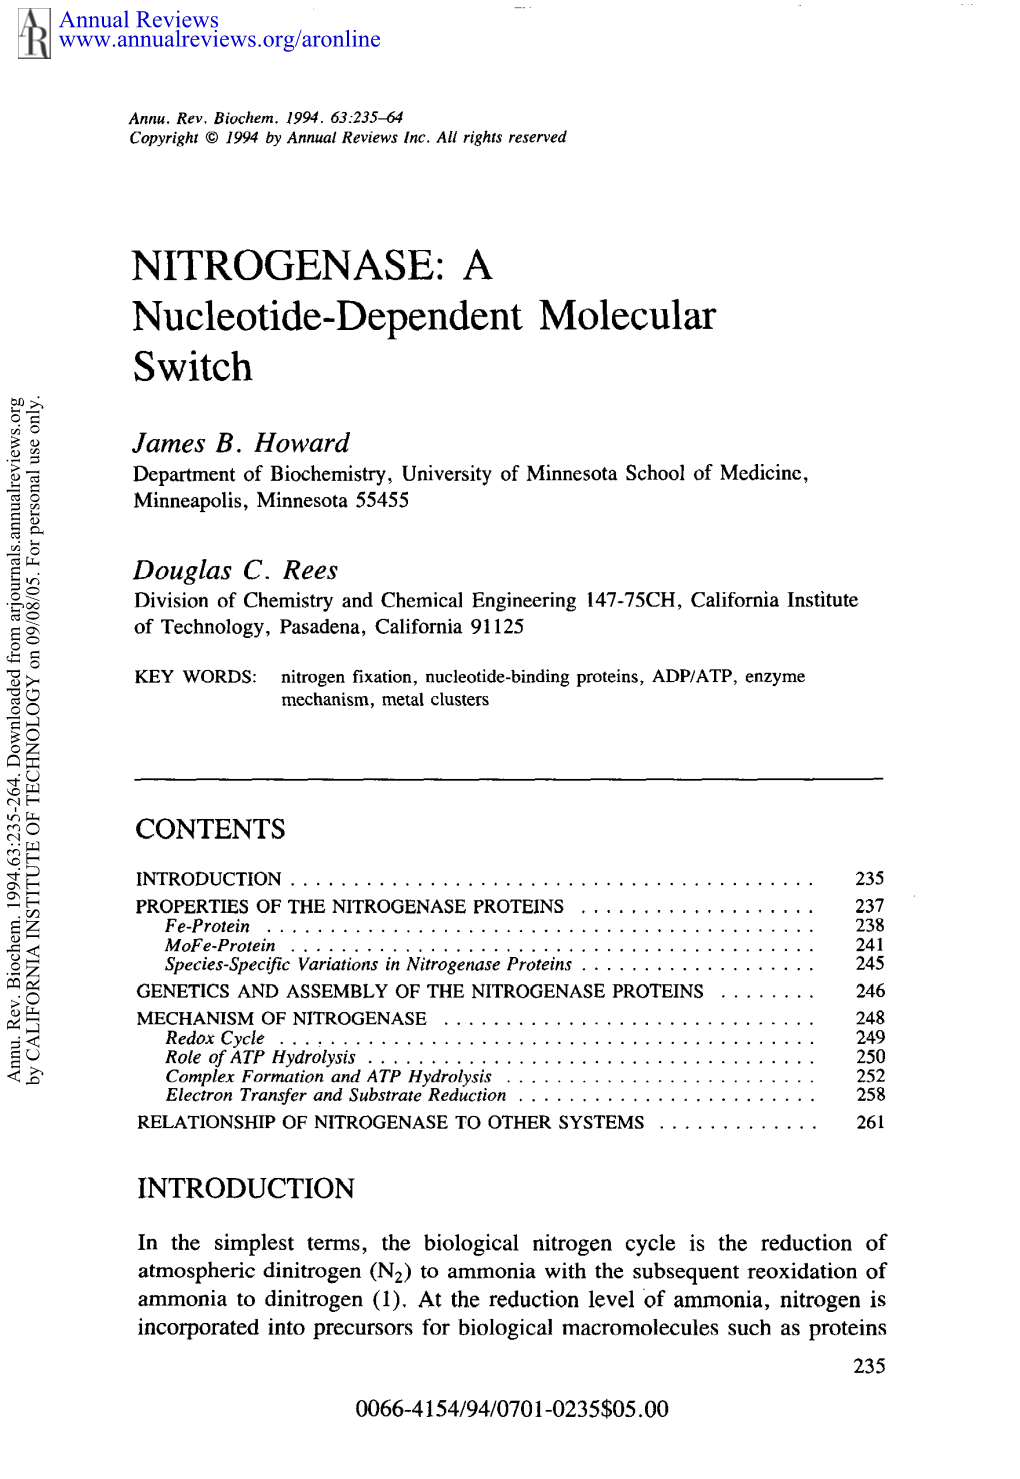 NITROGENASE: a Nucleotide-Dependent Molecular Switch